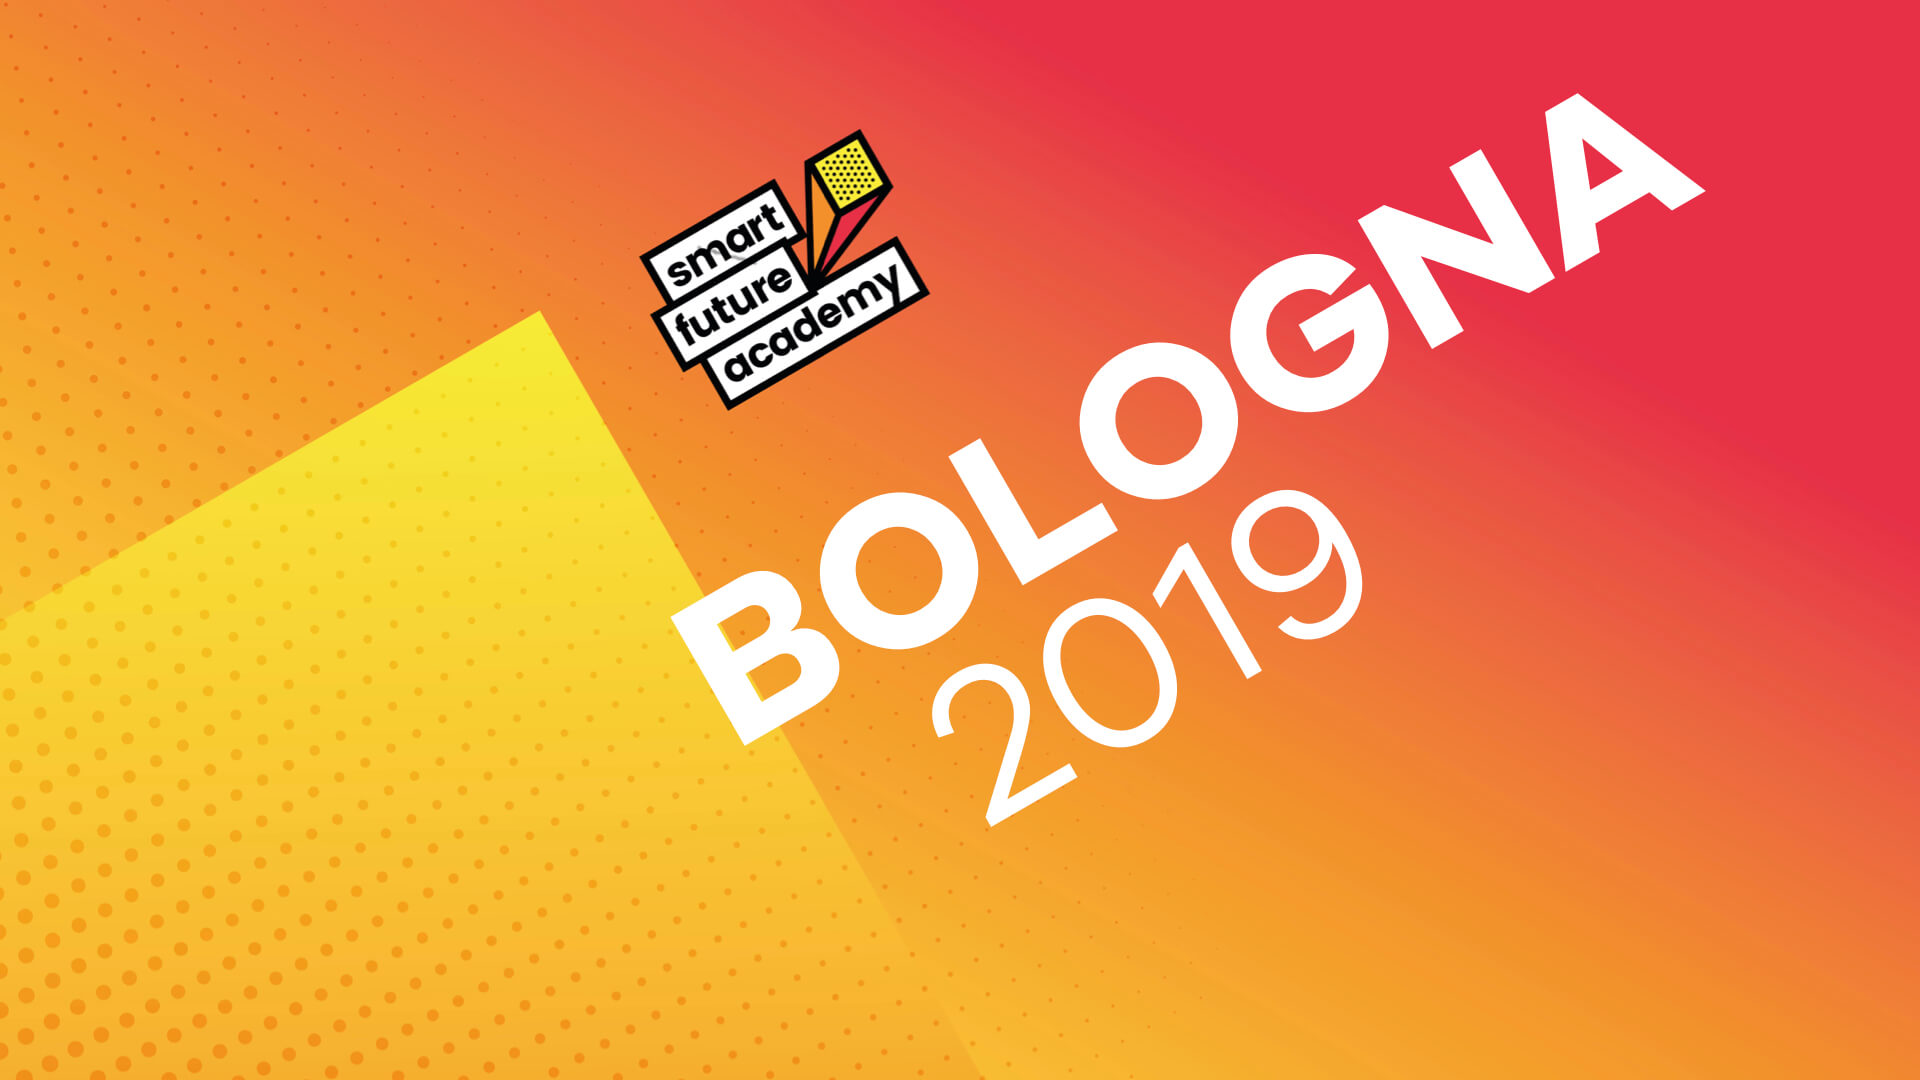 Bologna 2019